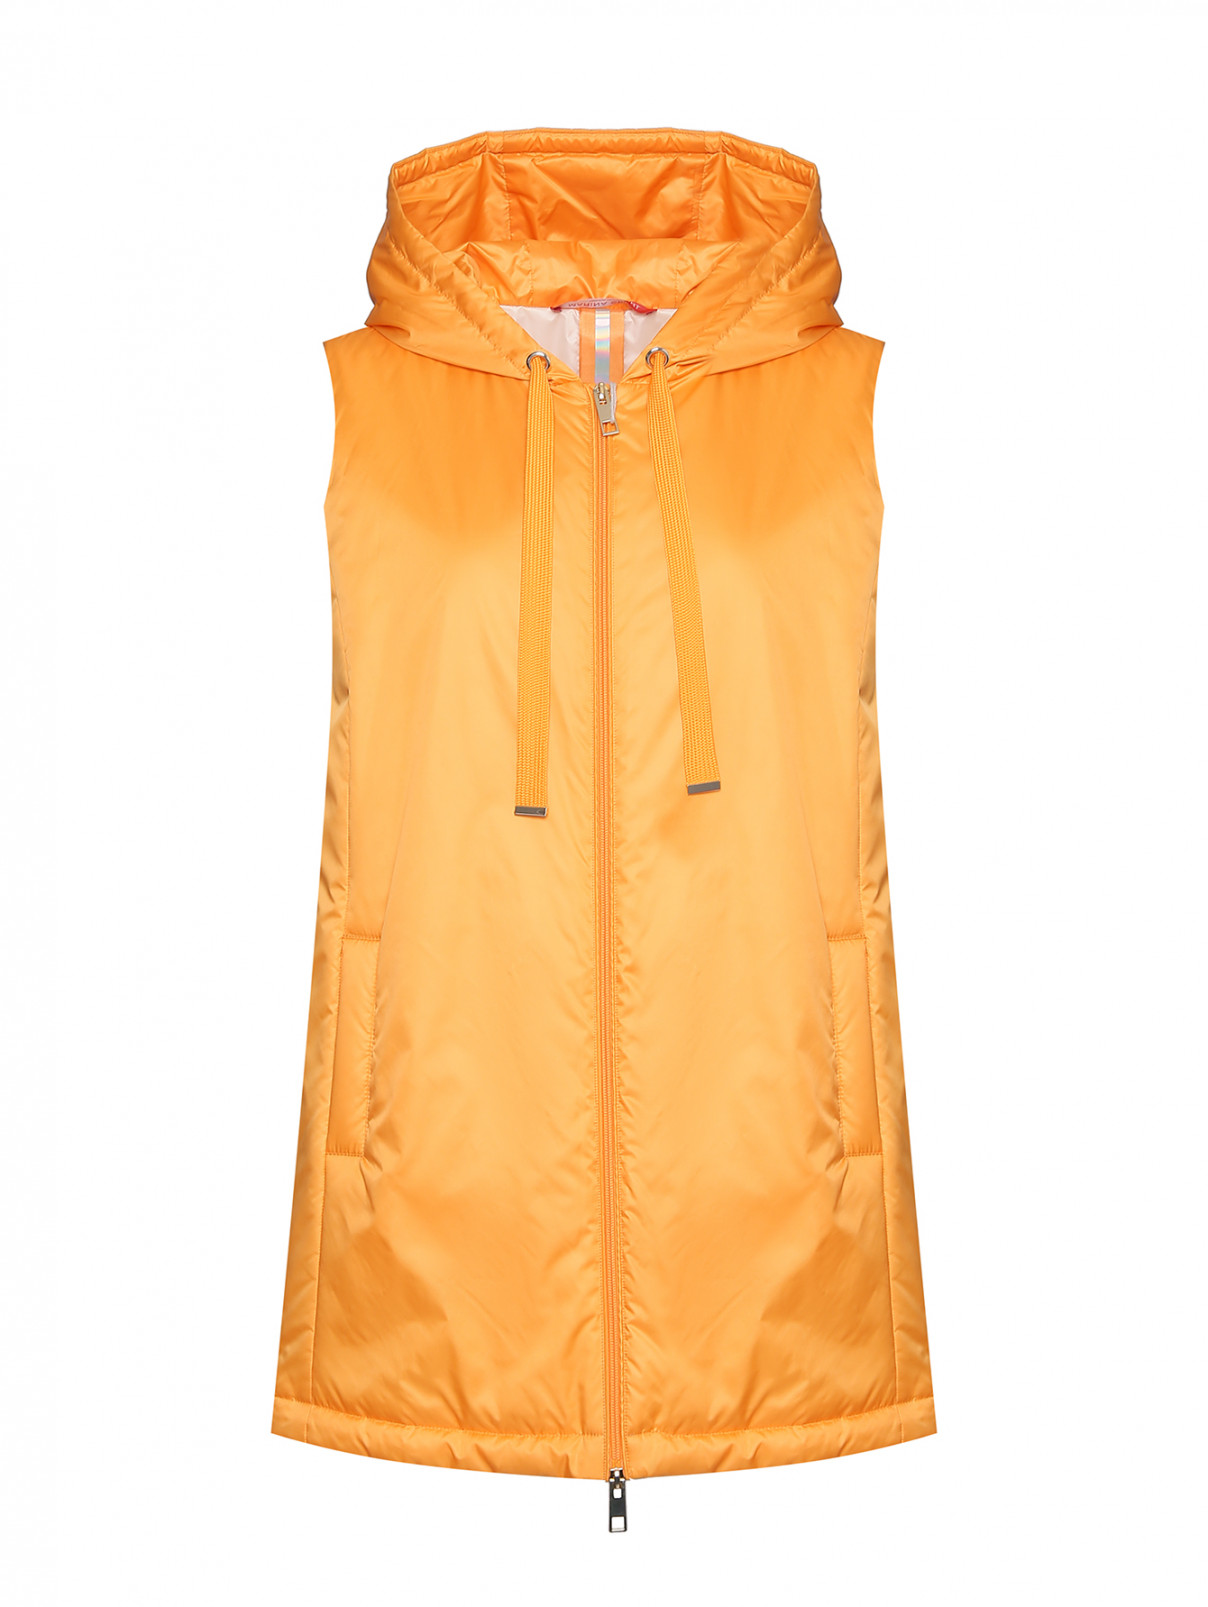 Удлиненный жилет на молнии Marina Rinaldi  –  Общий вид  – Цвет:  Оранжевый